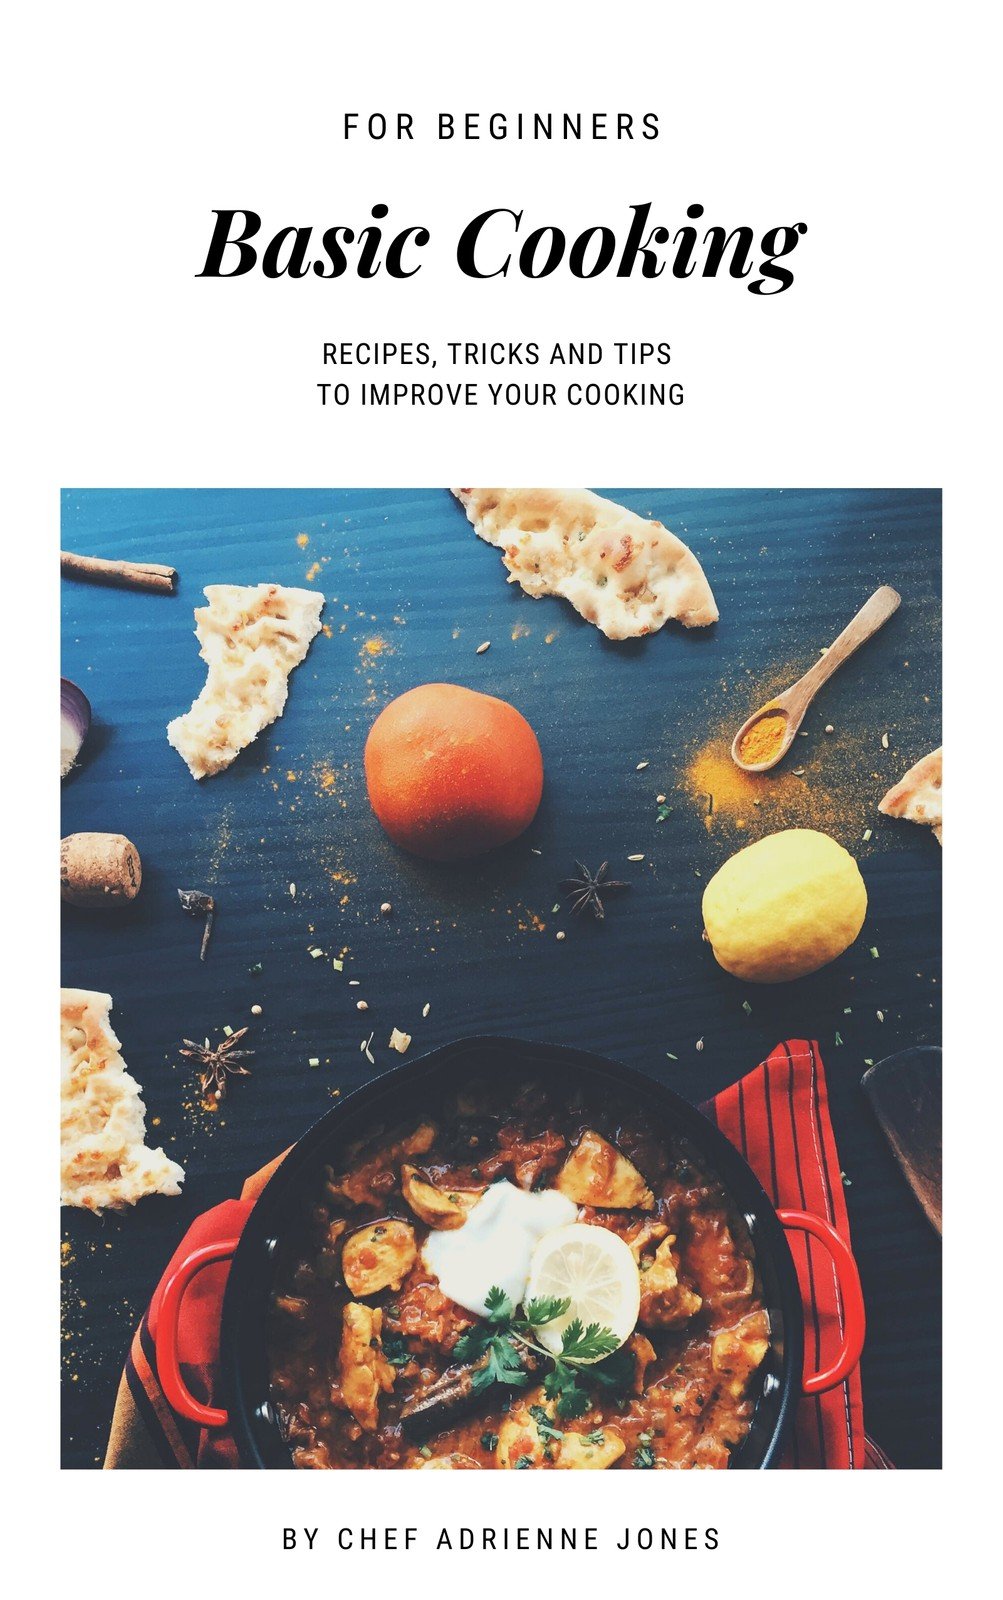 https://marketplace.canva.com/EADaorNkAlU/1/0/1003w/canva-white-minimalist-cookbook-book-cover-x3Y2CGDPV8U.jpg